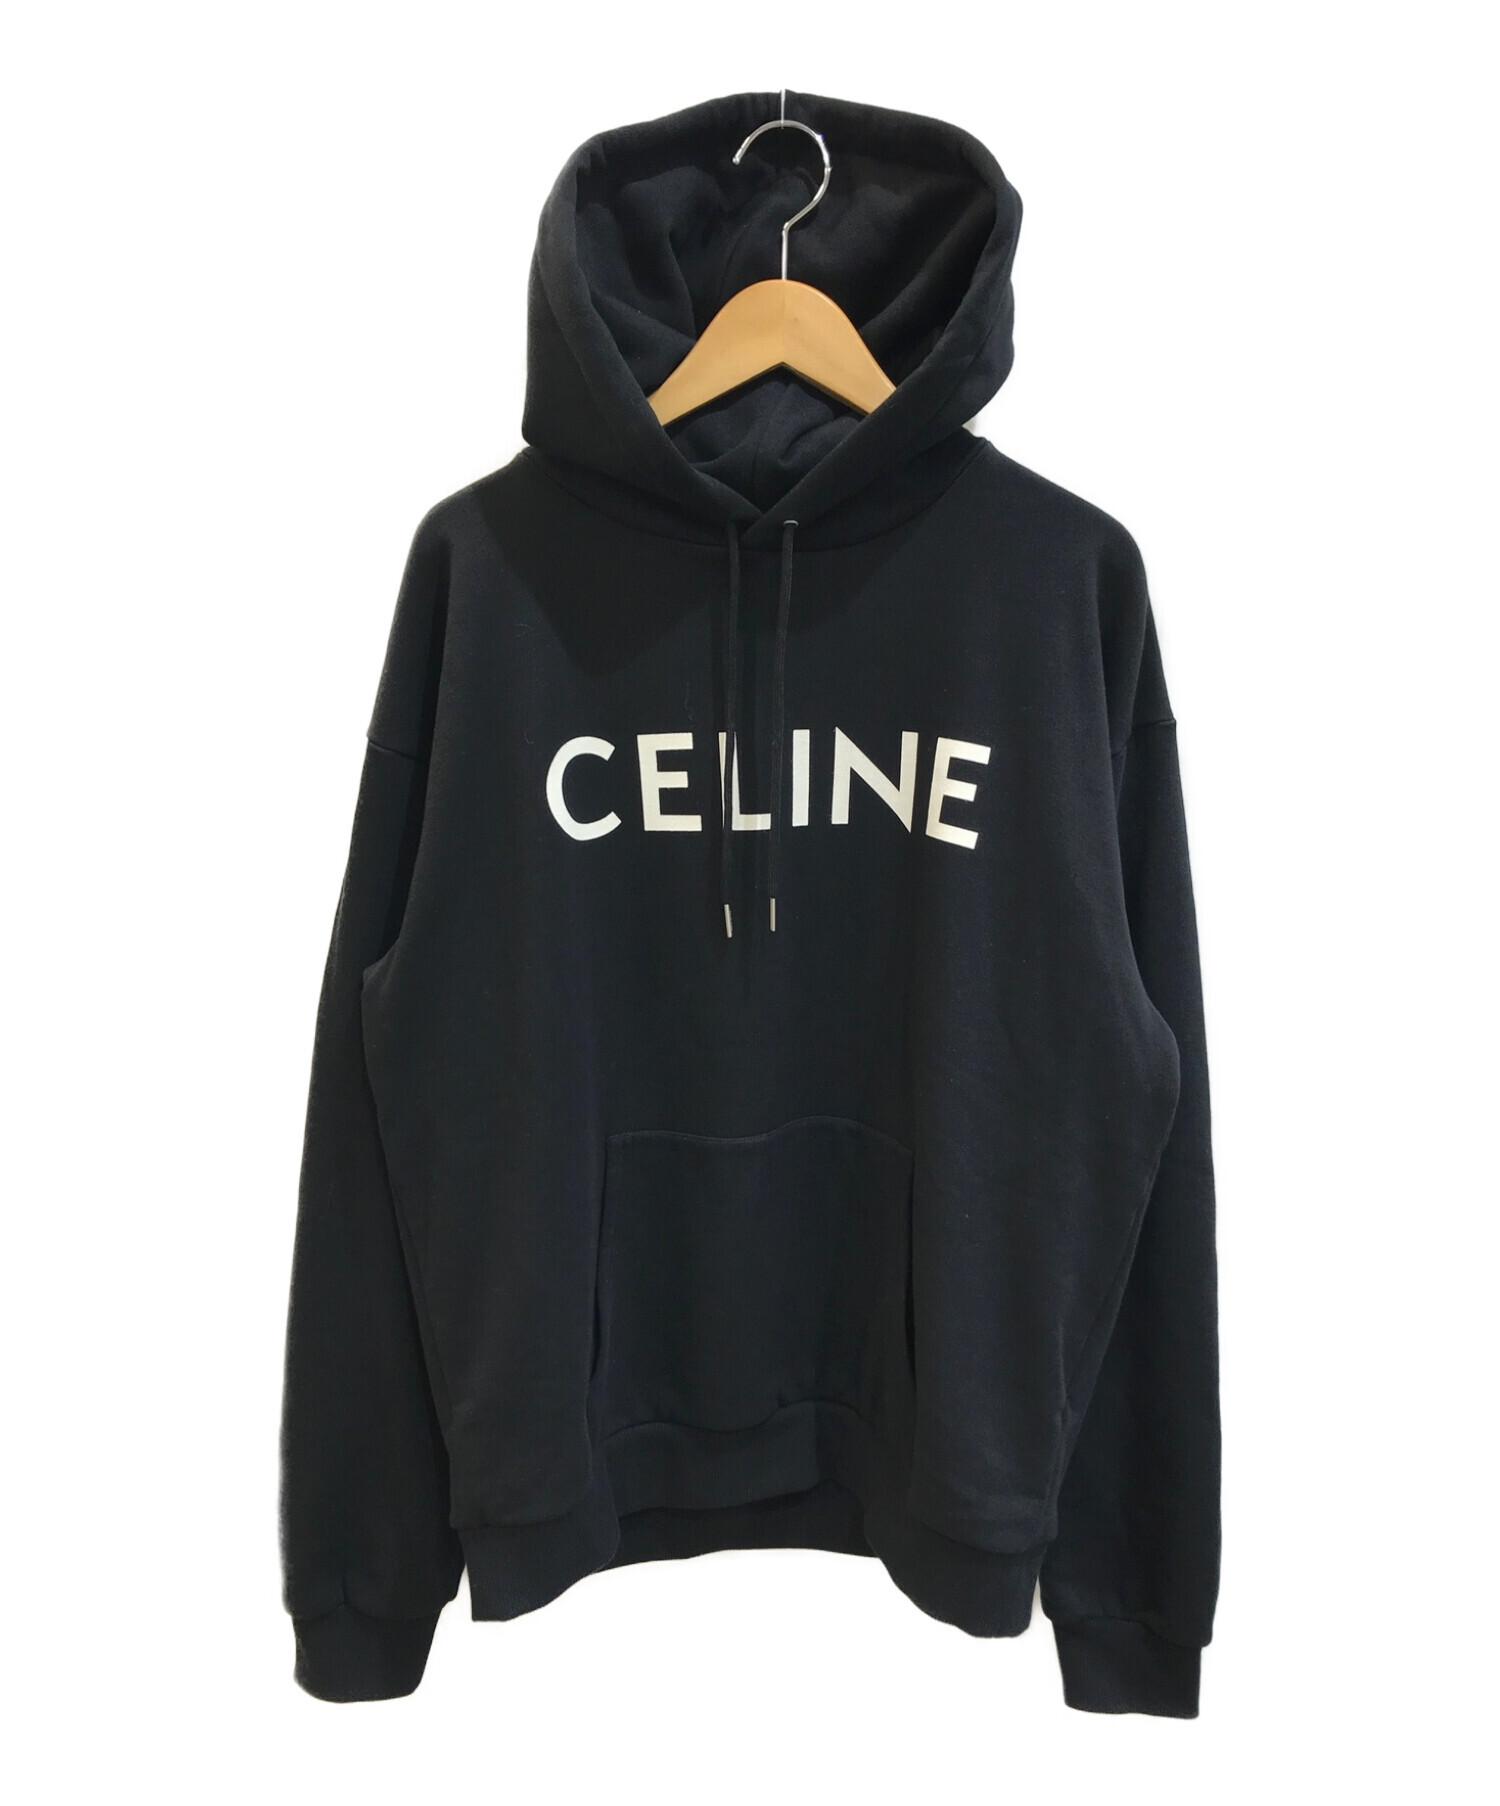 CELINE (セリーヌ) Loose Sweatshirt / スウェットパーカー ブラック サイズ:L